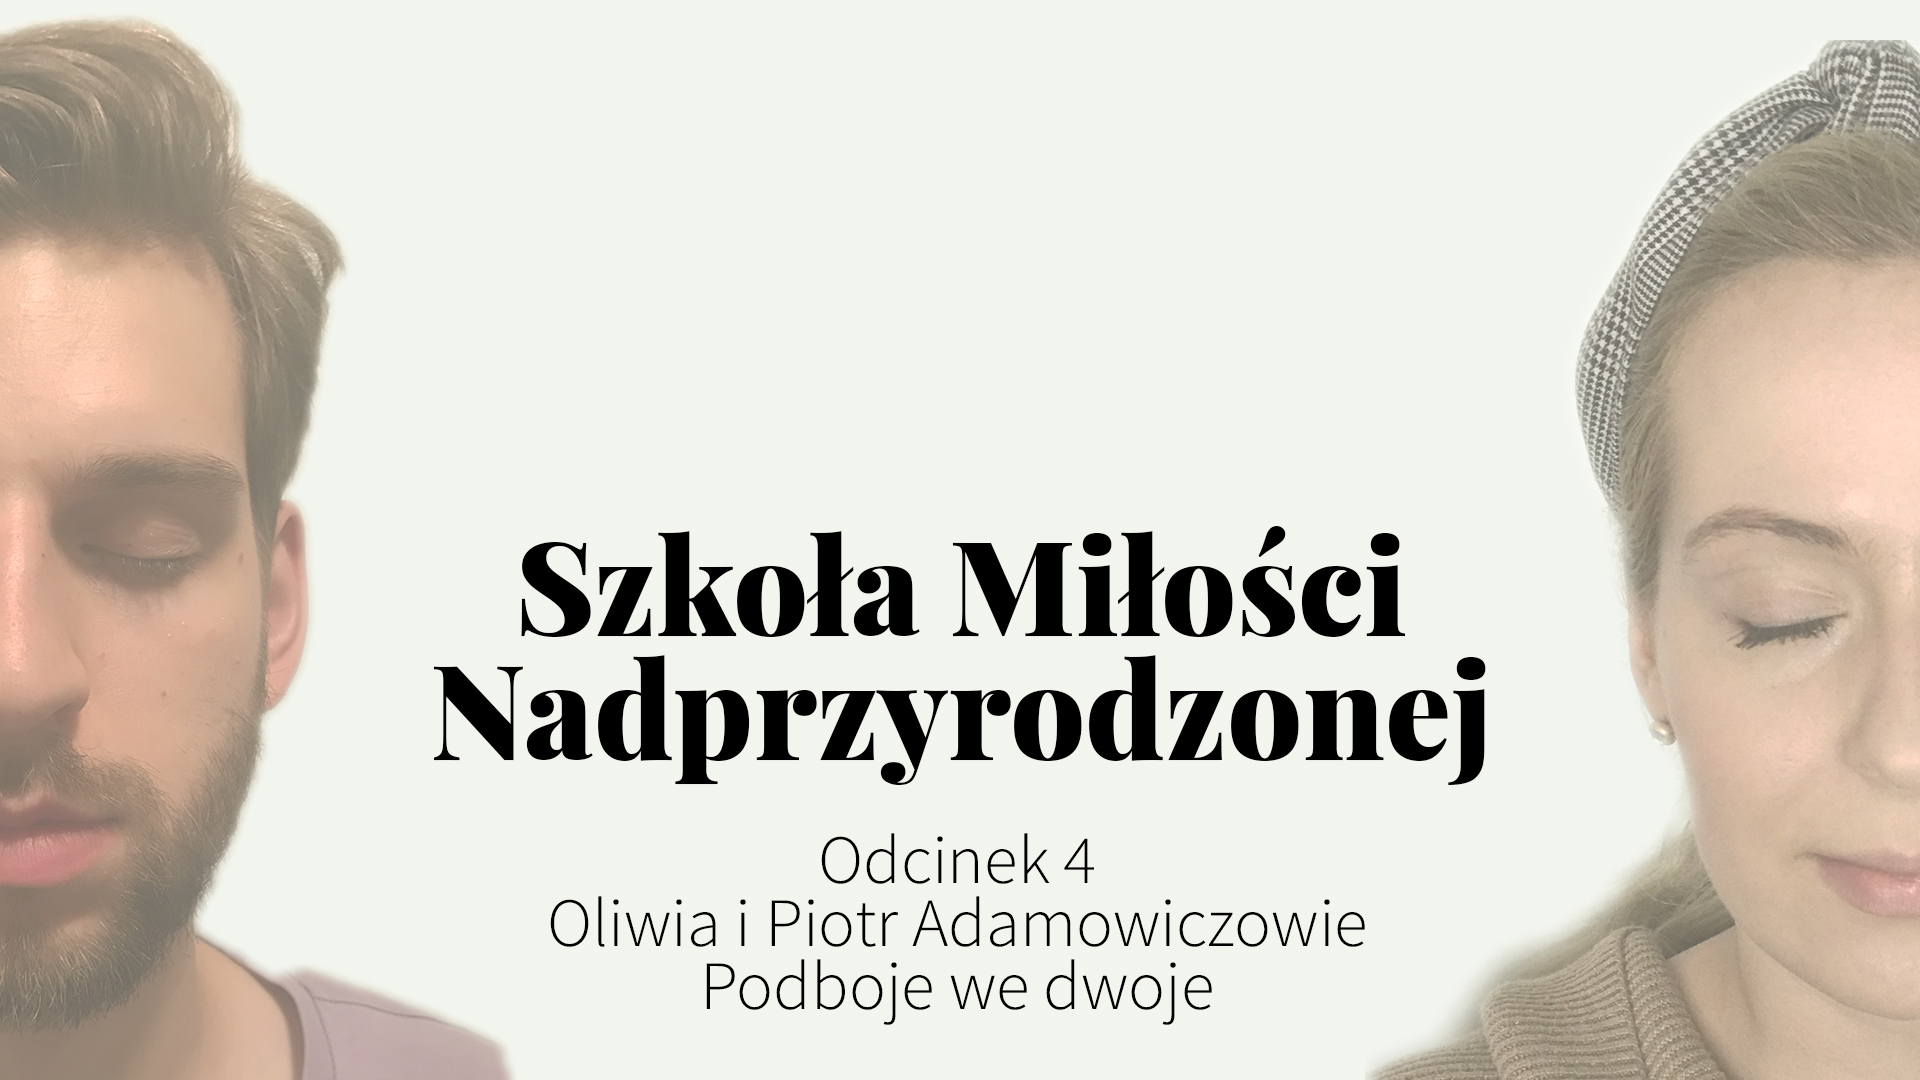 Oliwia i Piotr Adamowiczowie, Podboje we dwoje